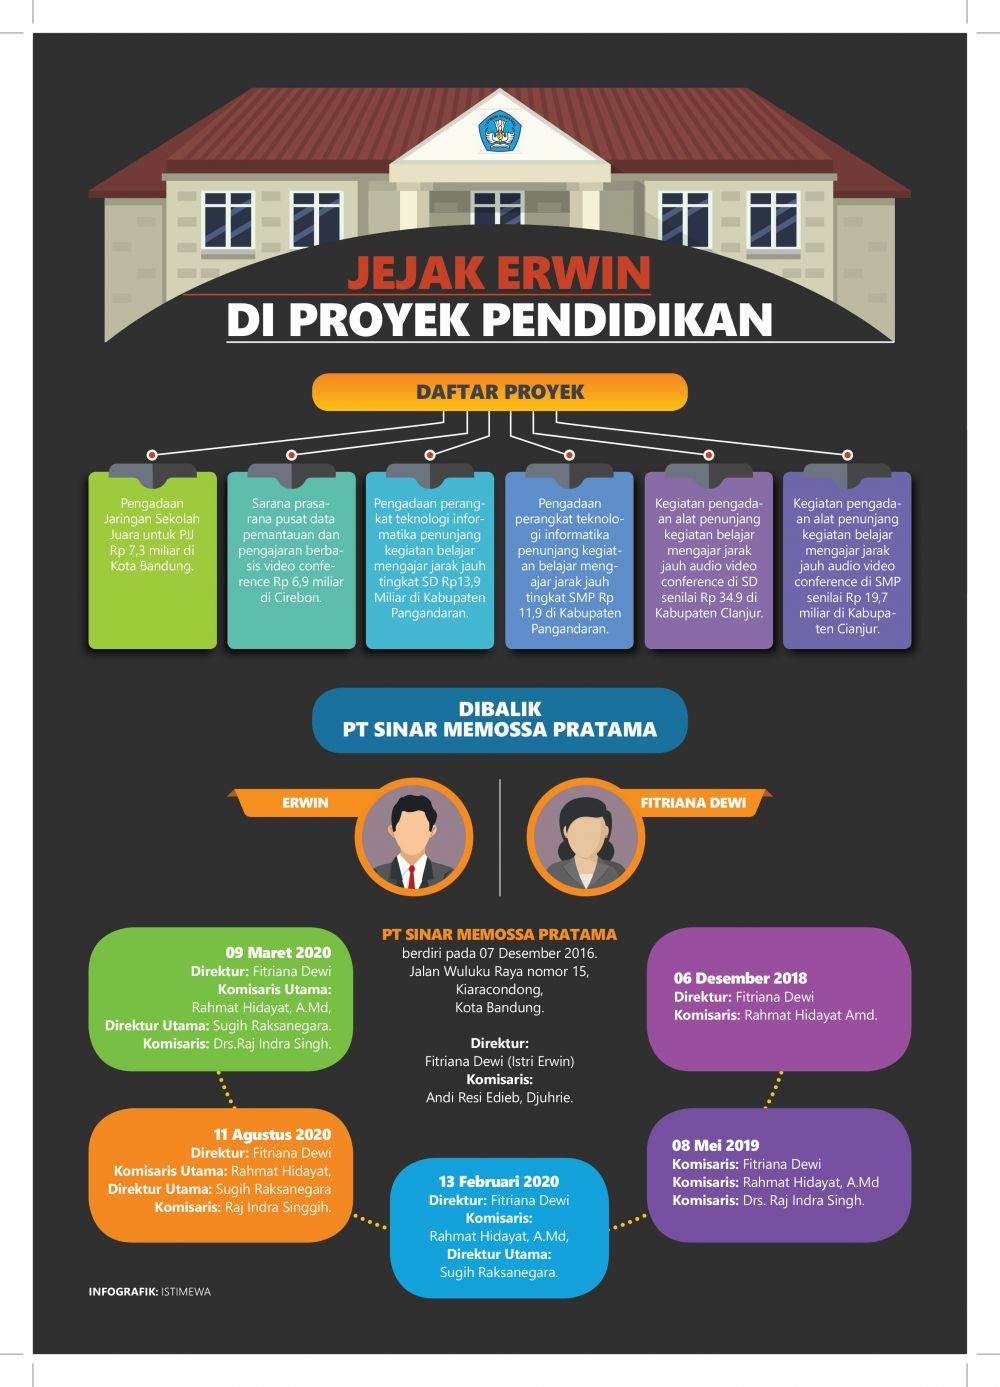 Main Mata Anggota DPRD Kota Bandung di Tengah Proyek Pendidikan